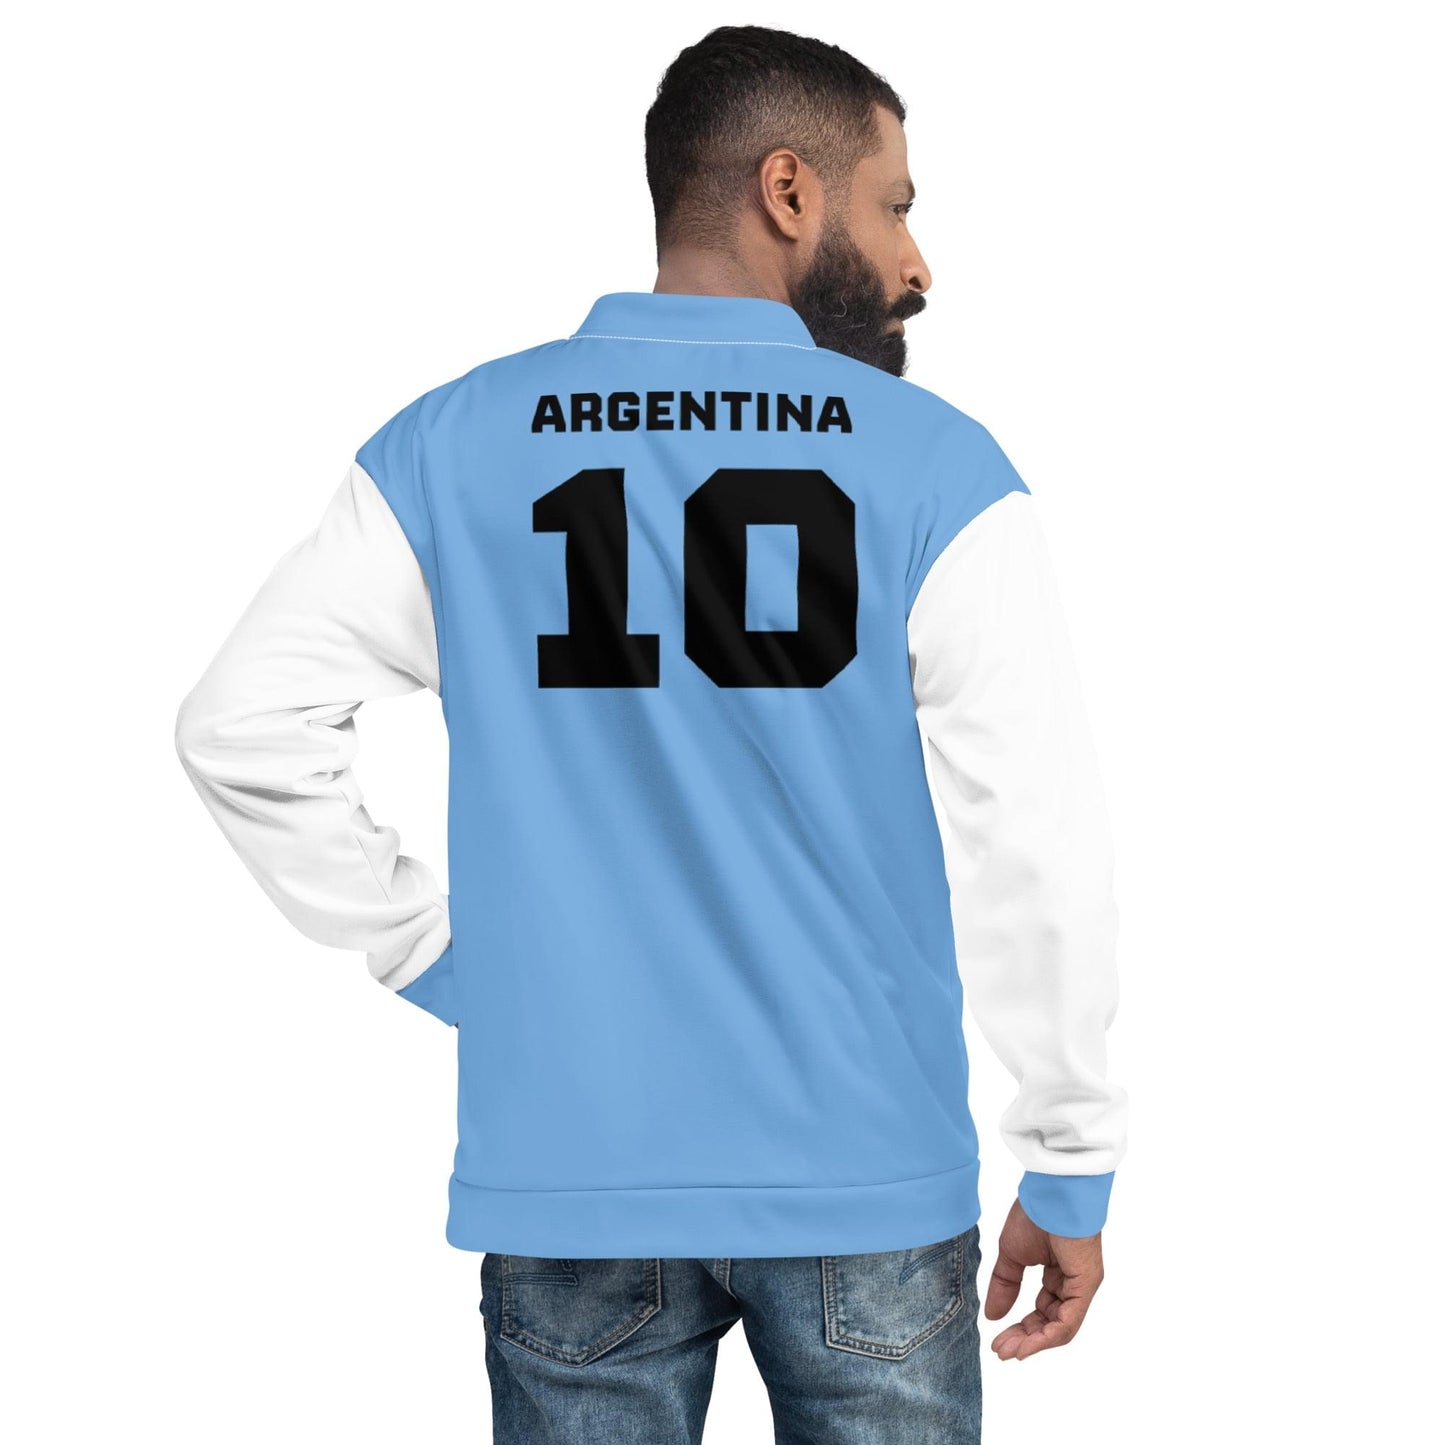 阿根廷夹克 / 男女皆宜的阿根廷服装风格 / 阿根廷国旗的颜色